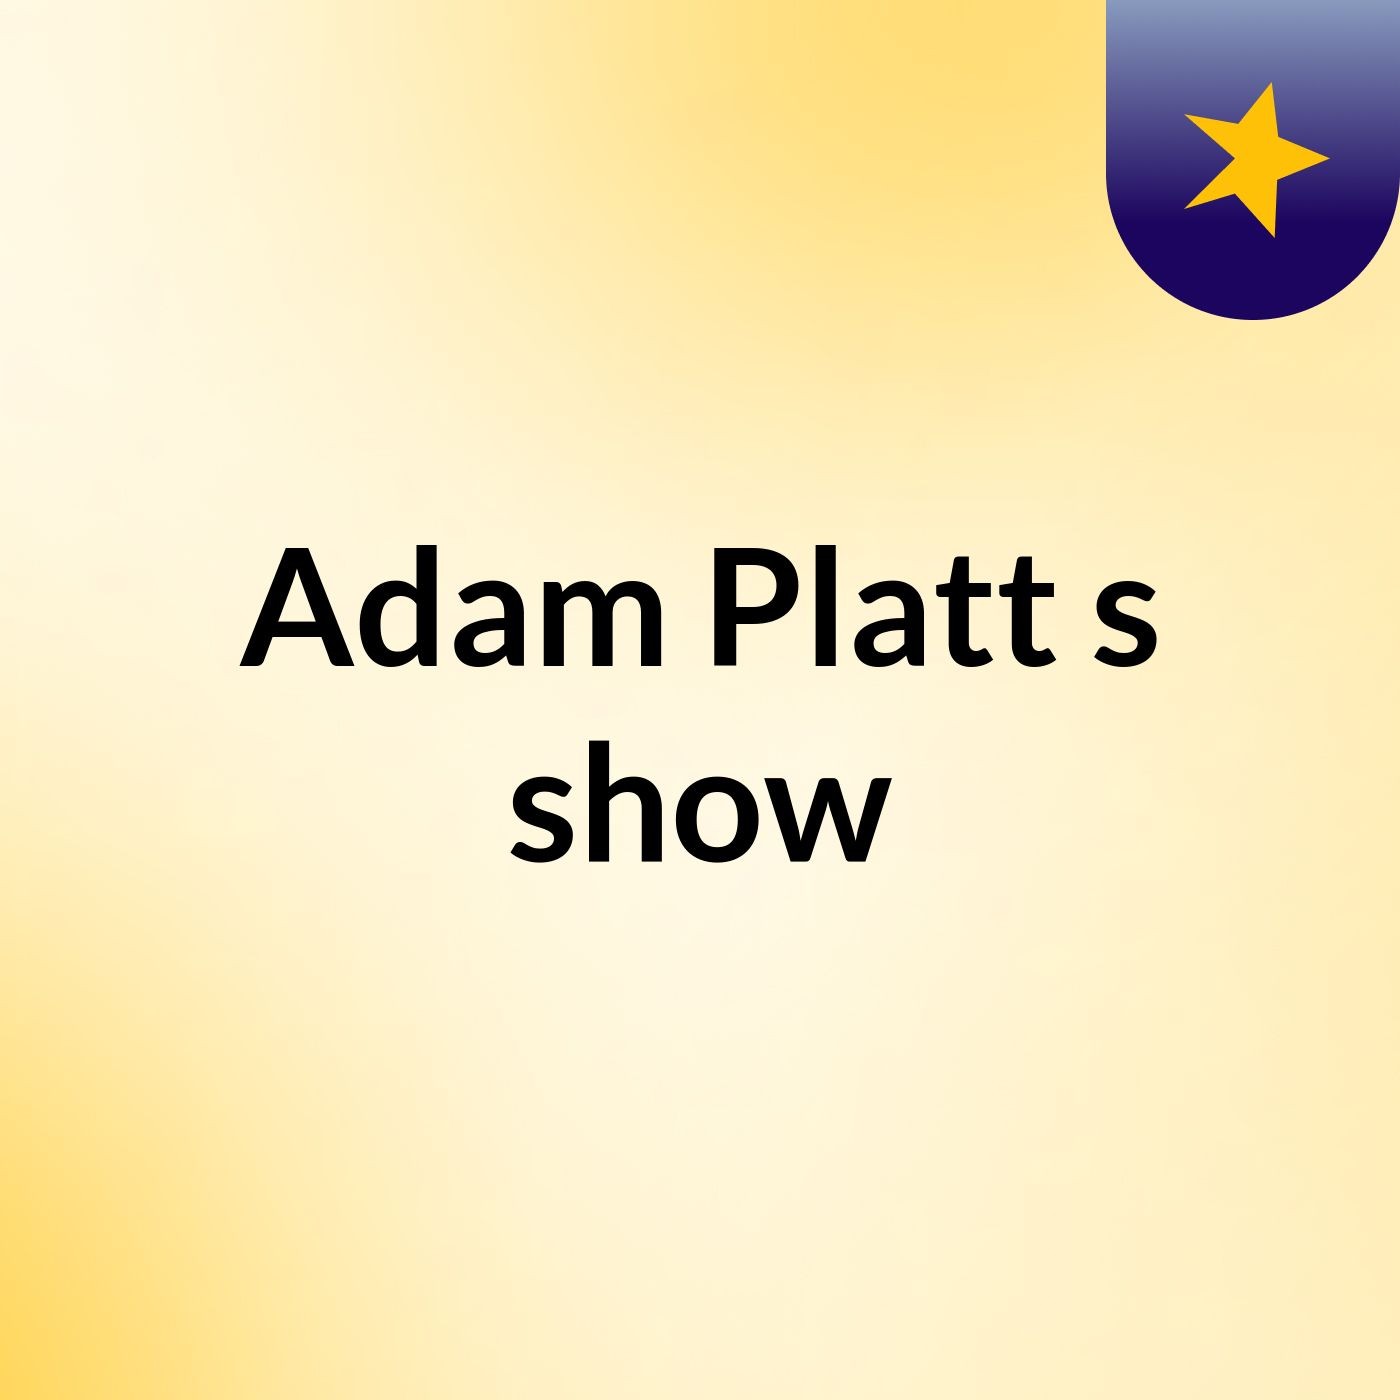 Adam Platt's show